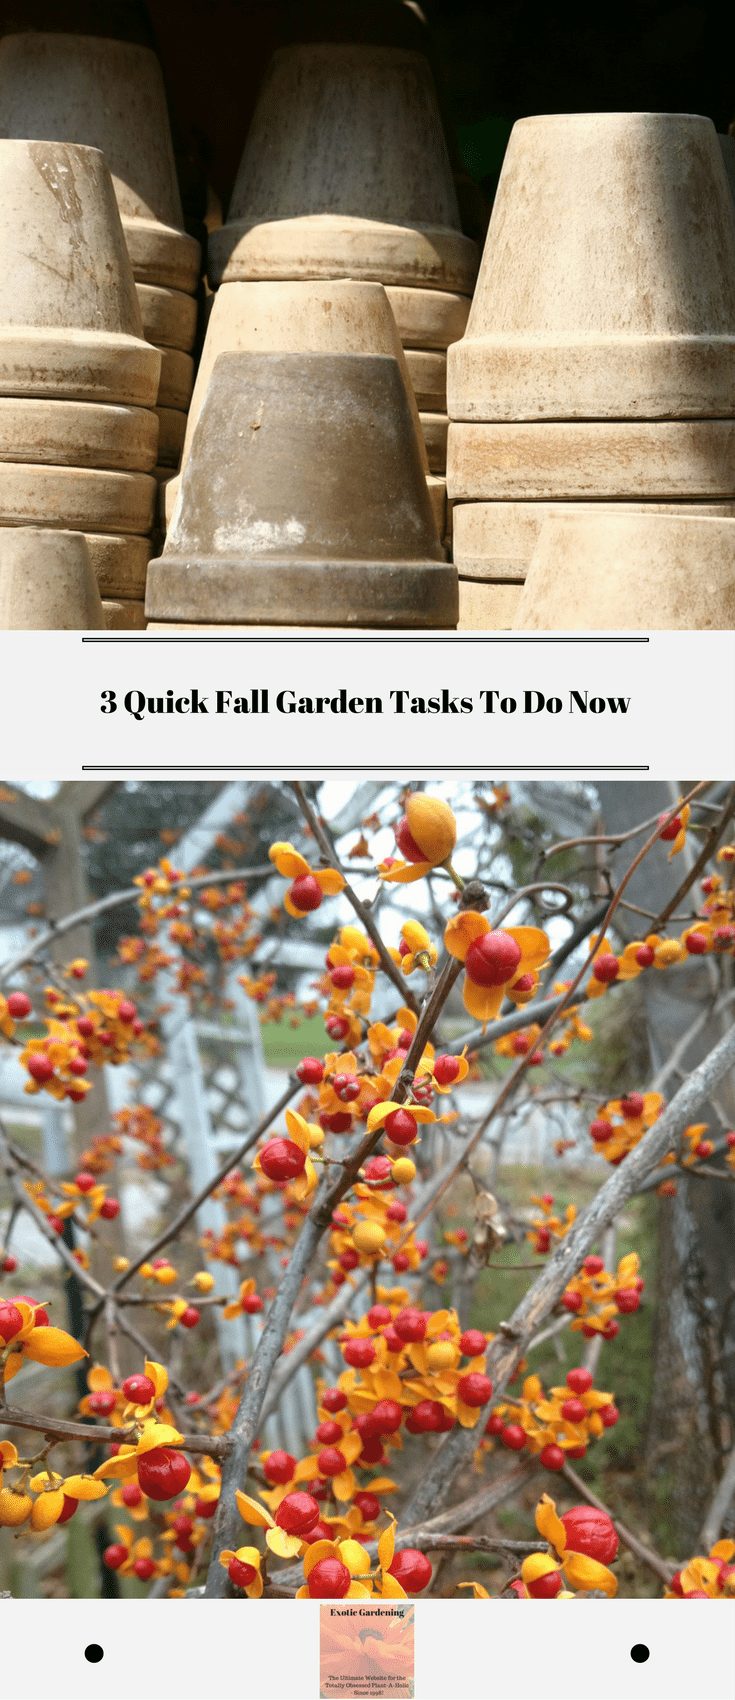 3 Quick Fall Garden Tasks To Do Now